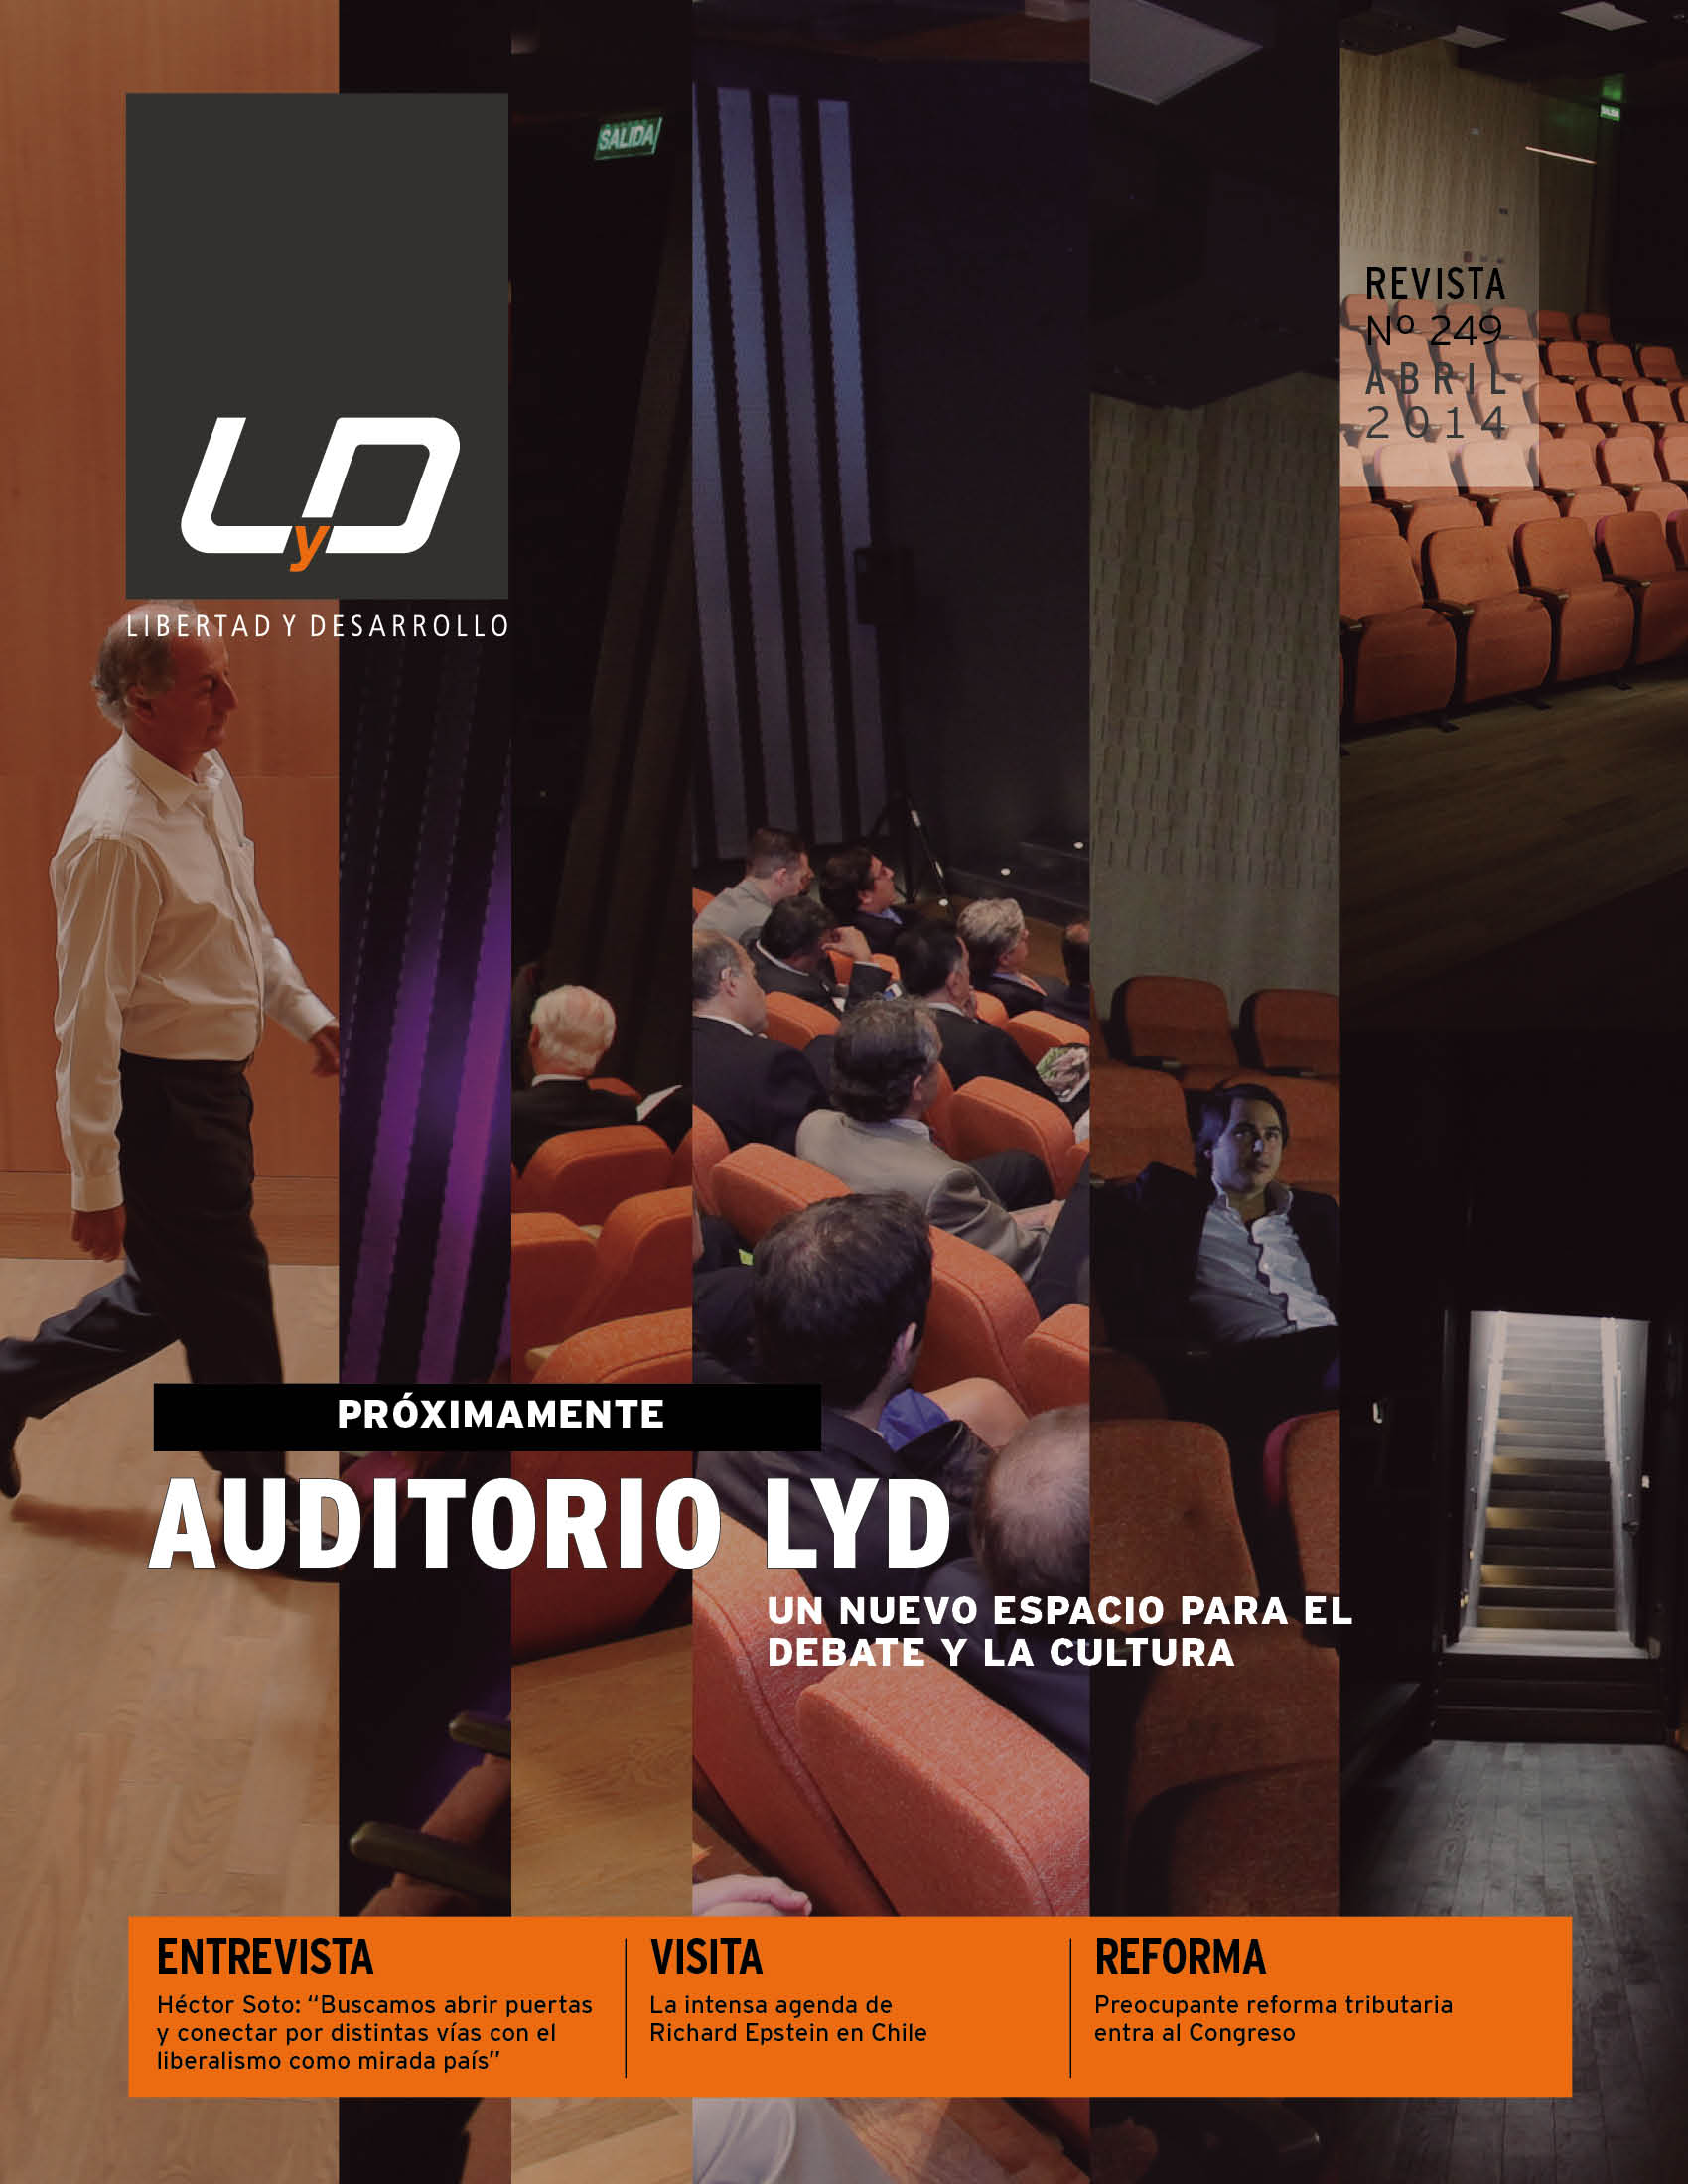 Auditorio LyD, un nuevo espacio para el debate y la cultura